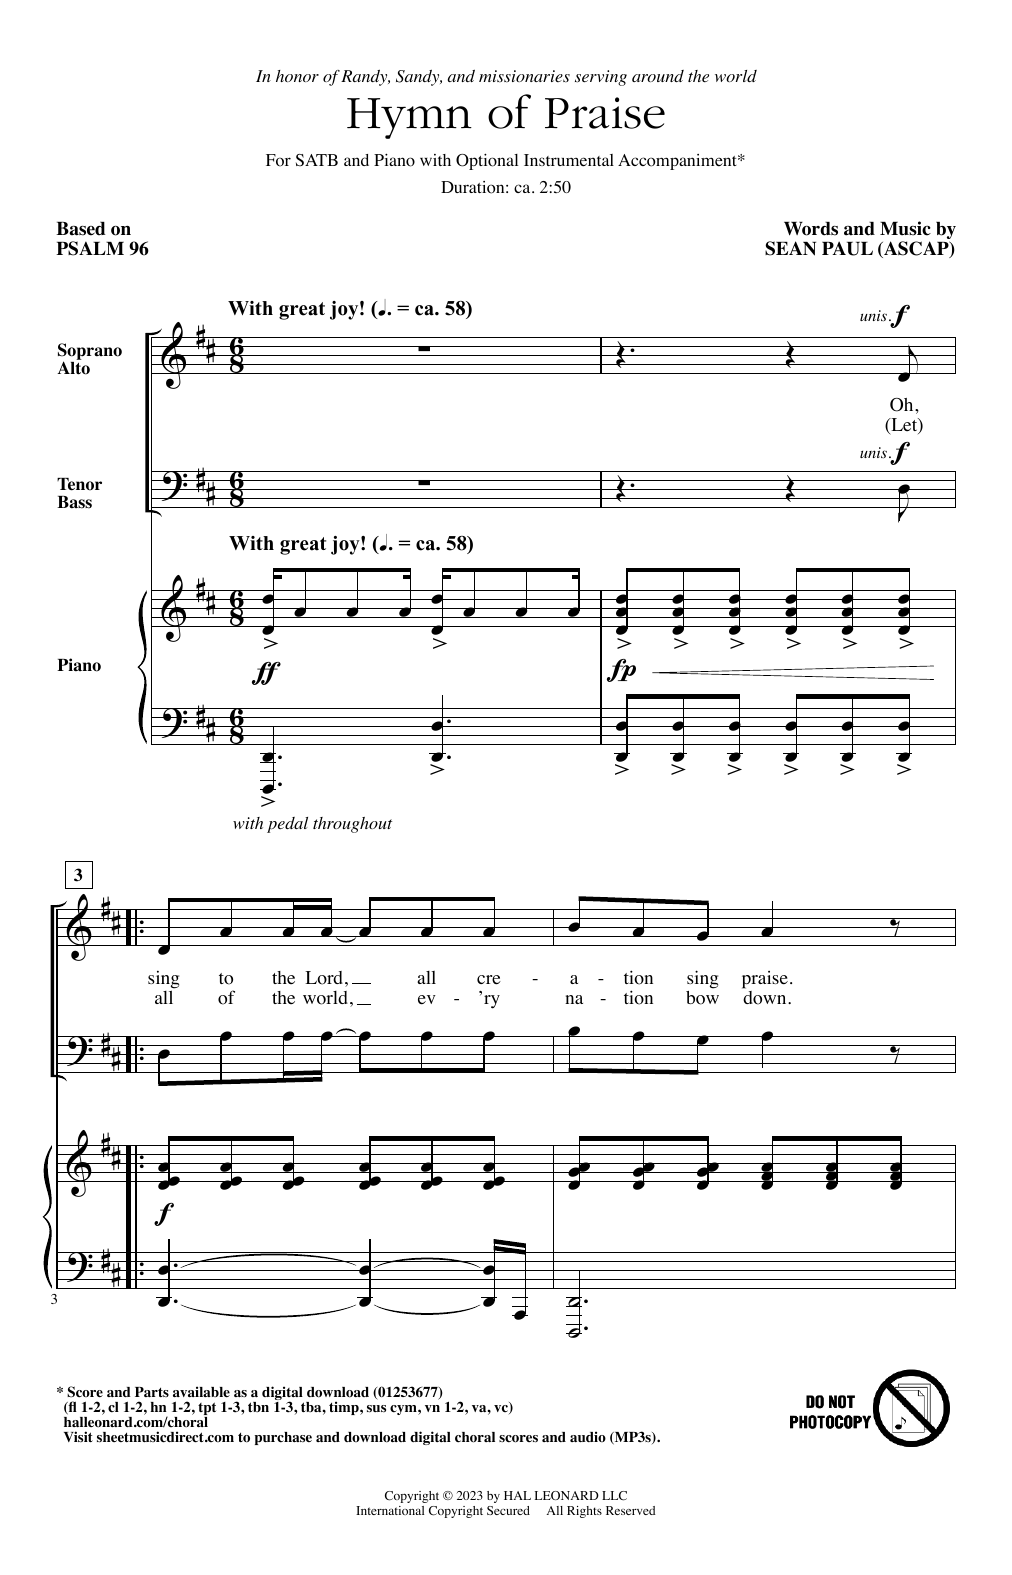 Sean Paul Hymn Of Praise Sheet Music Notes & Chords for SATB Choir - Download or Print PDF